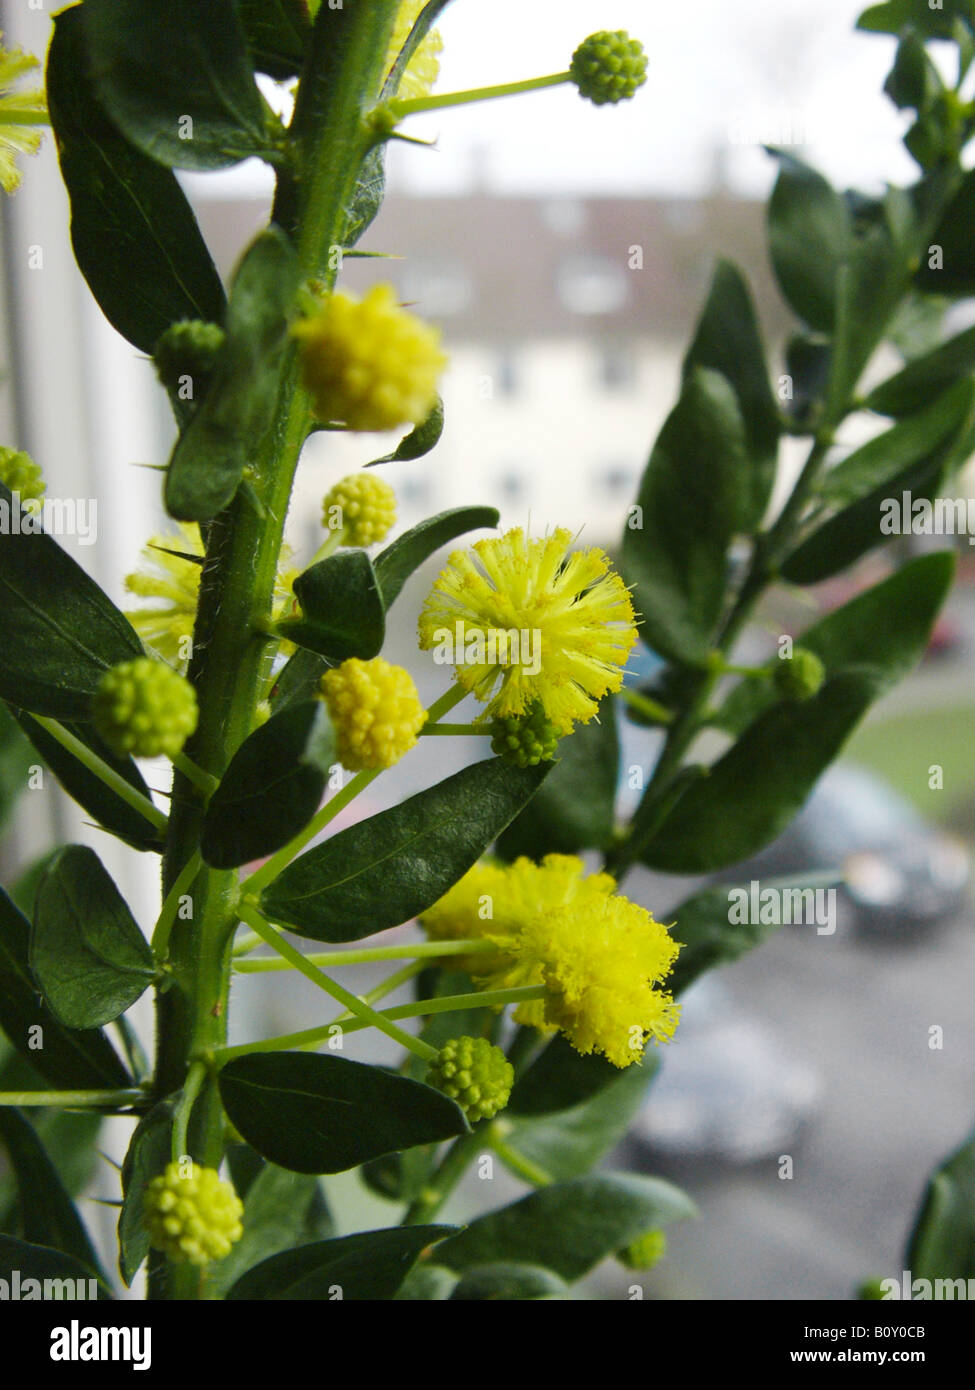 Kangaroo thorn, Prickly Wattle, Paradox Acacia (Acacia paradoxa, Acacia armata), blooming on a windowsill Stock Photo